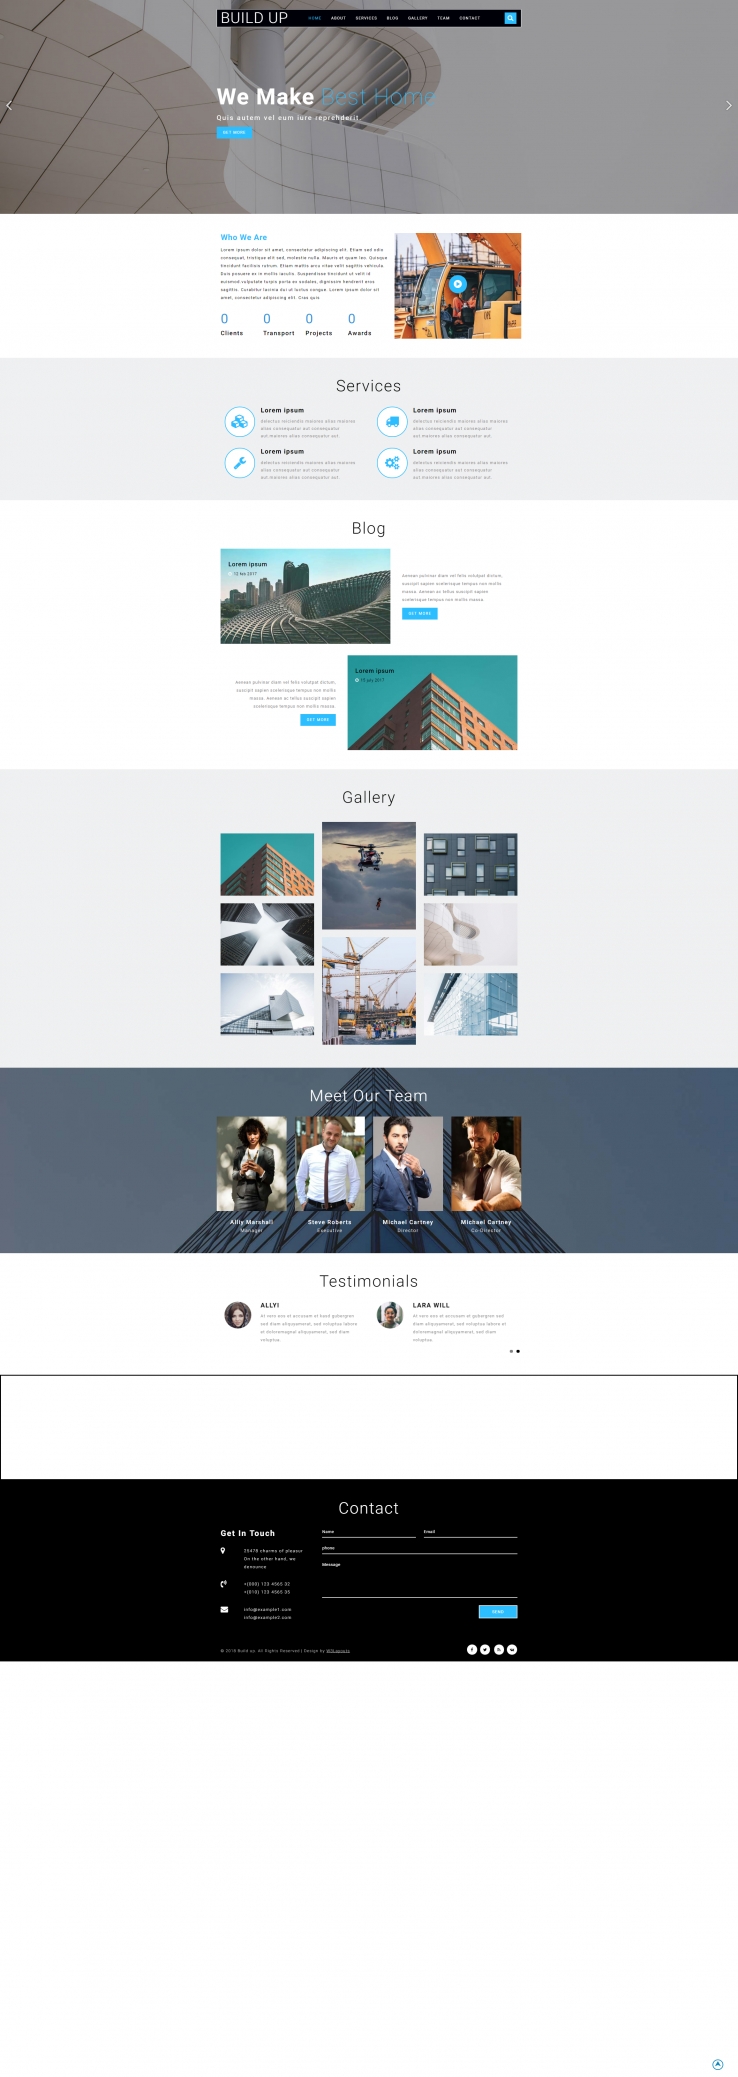 蓝色简洁风格的建筑工程设计网页模板下载